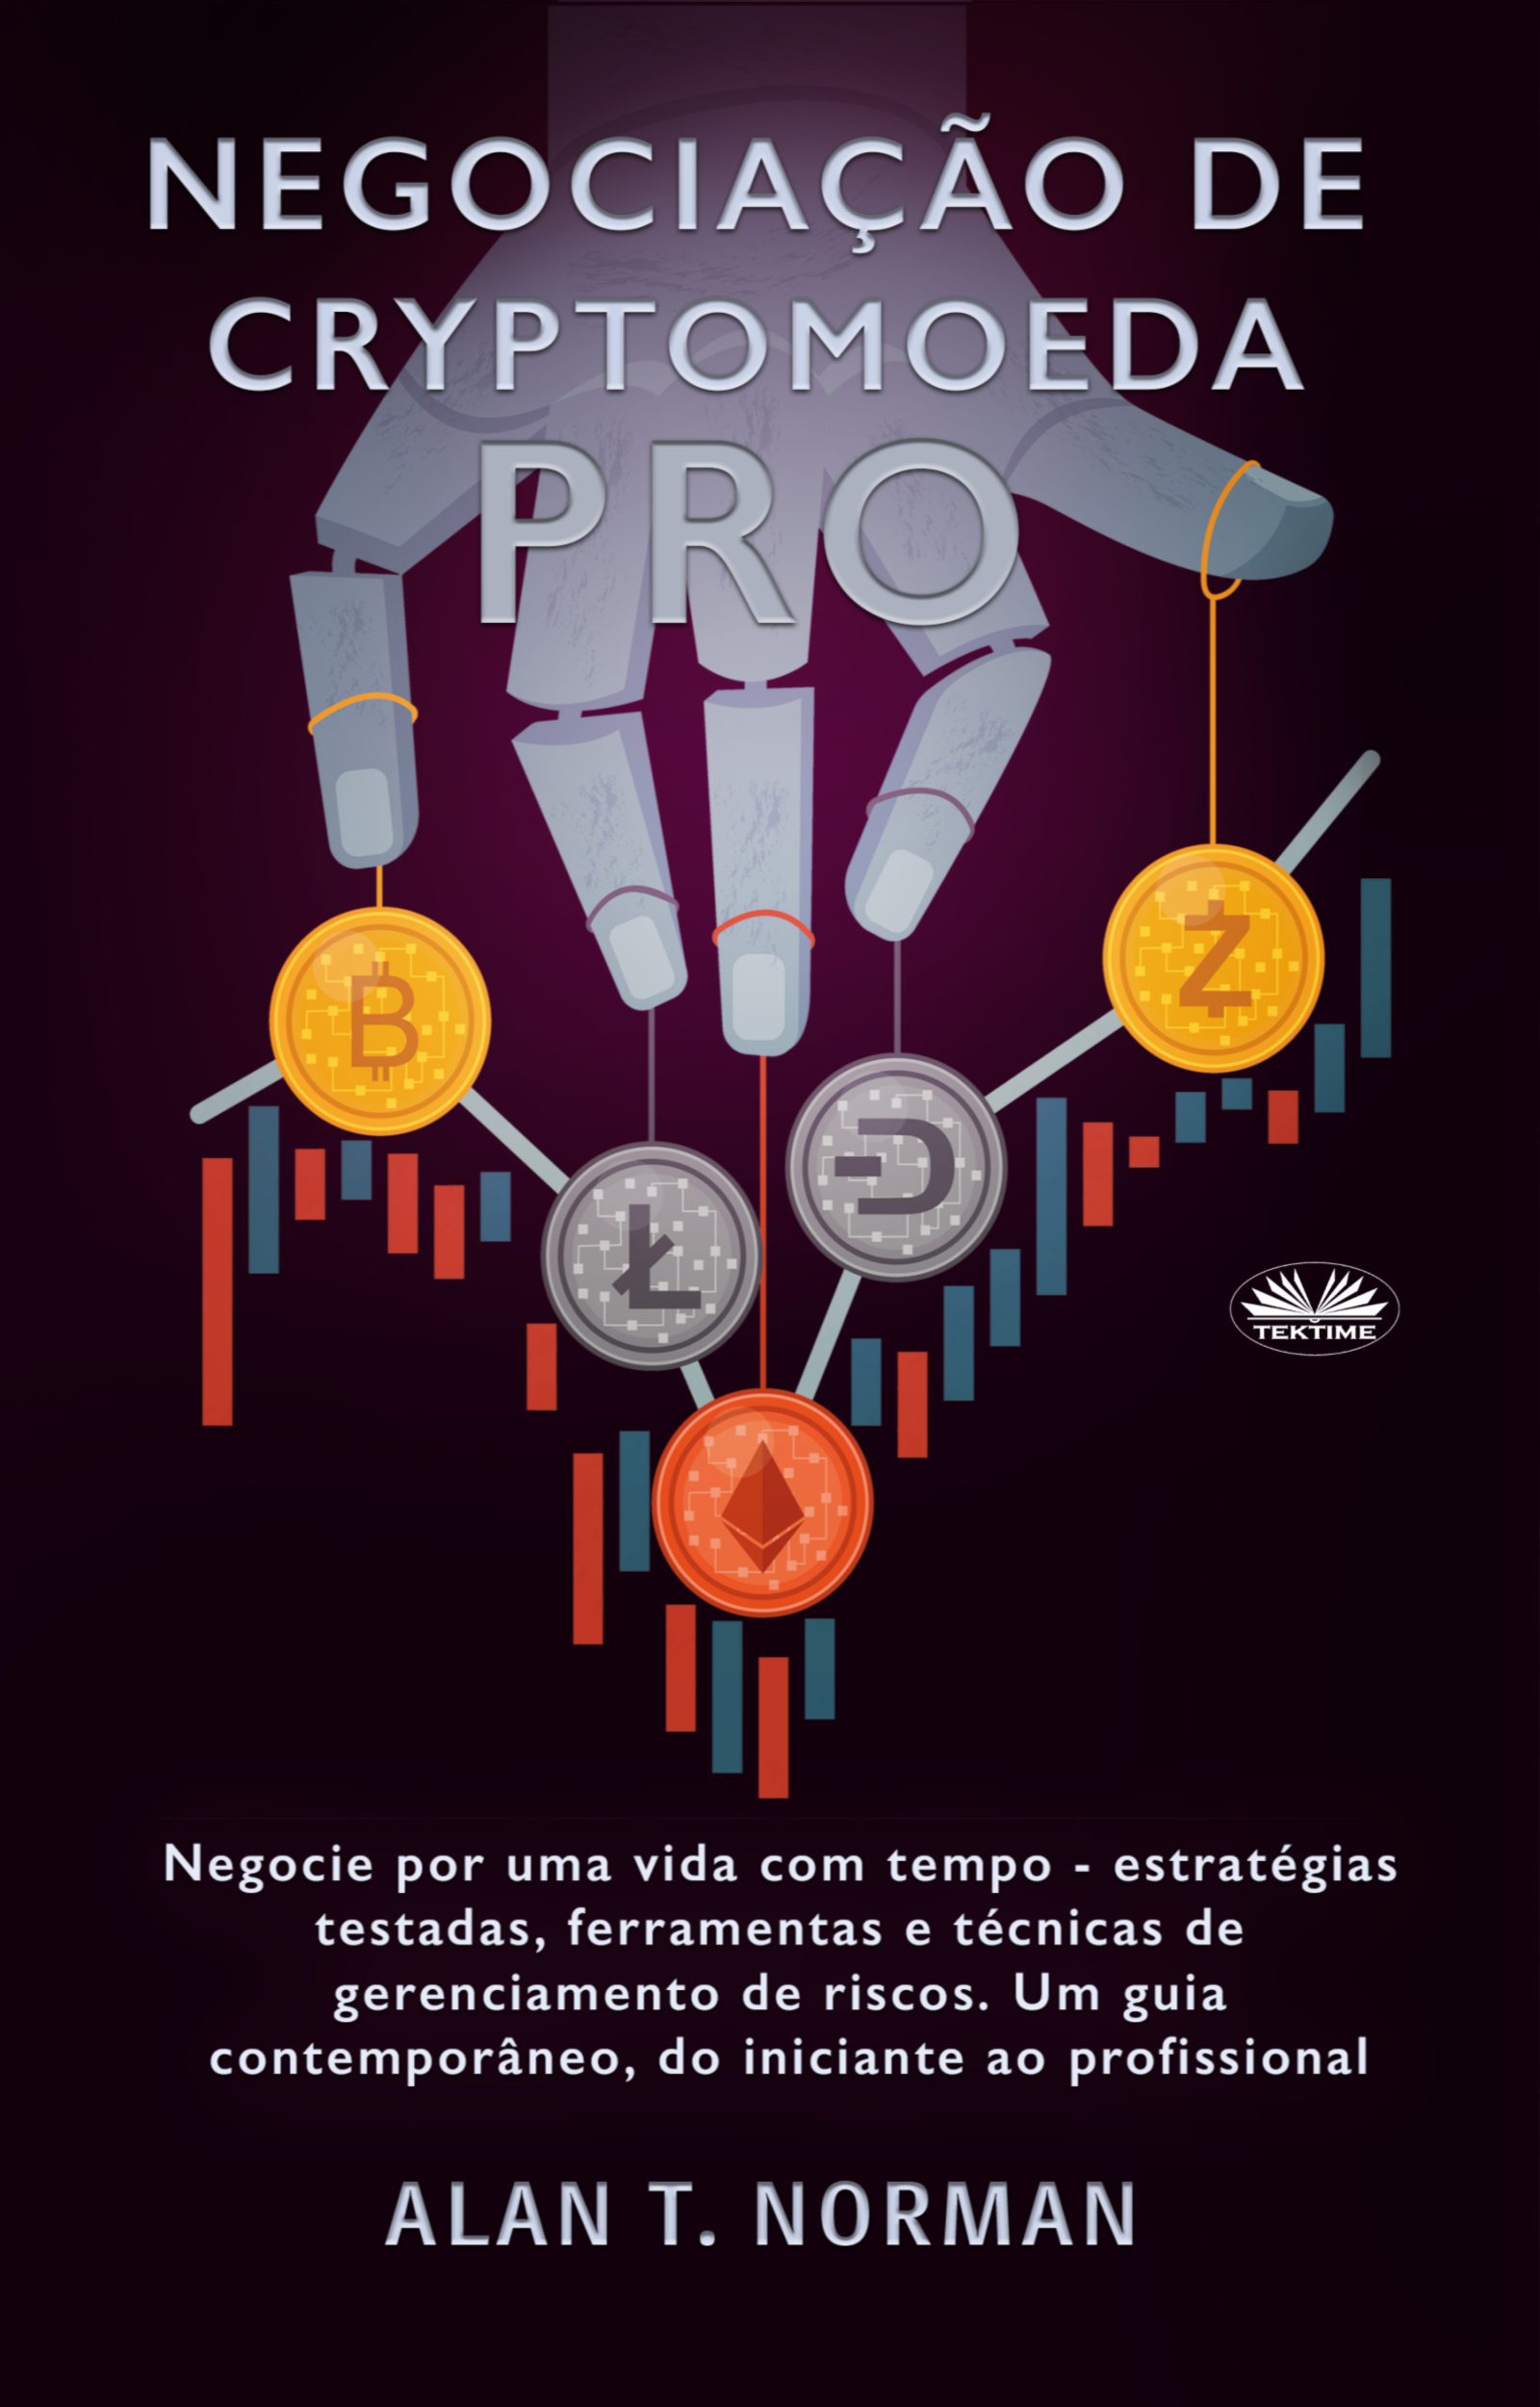 Книга Negociação De Cryptomoeda Pró из серии , созданная Alan T. Norman, может относится к жанру Личные финансы, Зарубежная деловая литература. Стоимость электронной книги Negociação De Cryptomoeda Pró с идентификатором 48773468 составляет 257.16 руб.